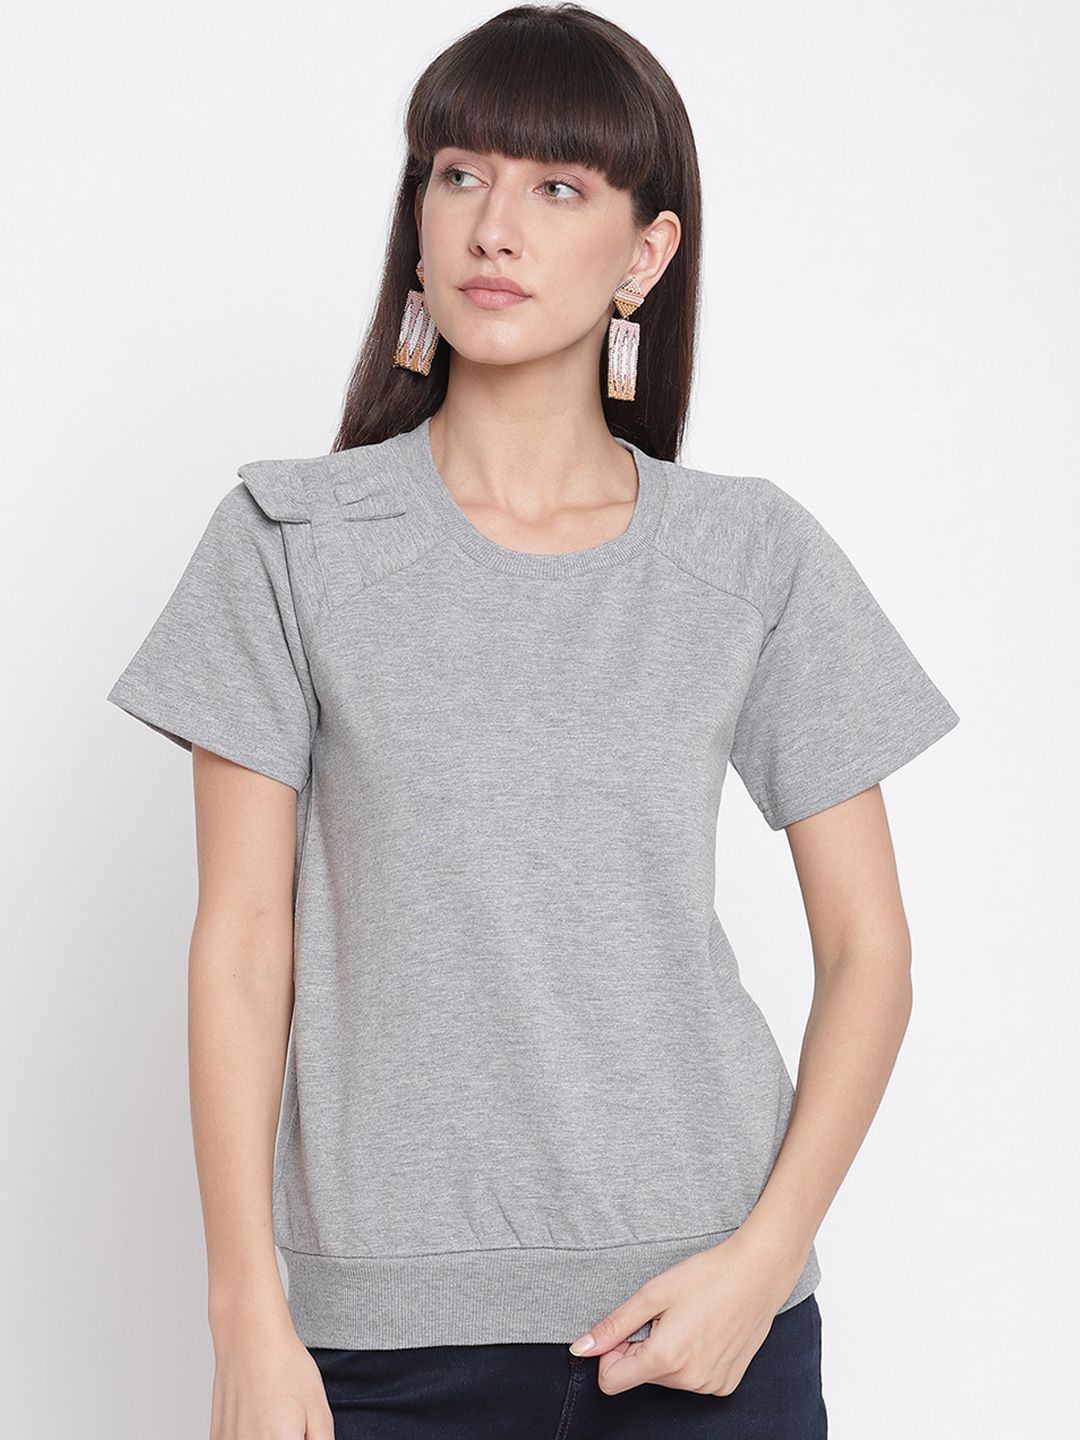 The Vanca Women Grey Solid Fleece Sweatshirt Price in India